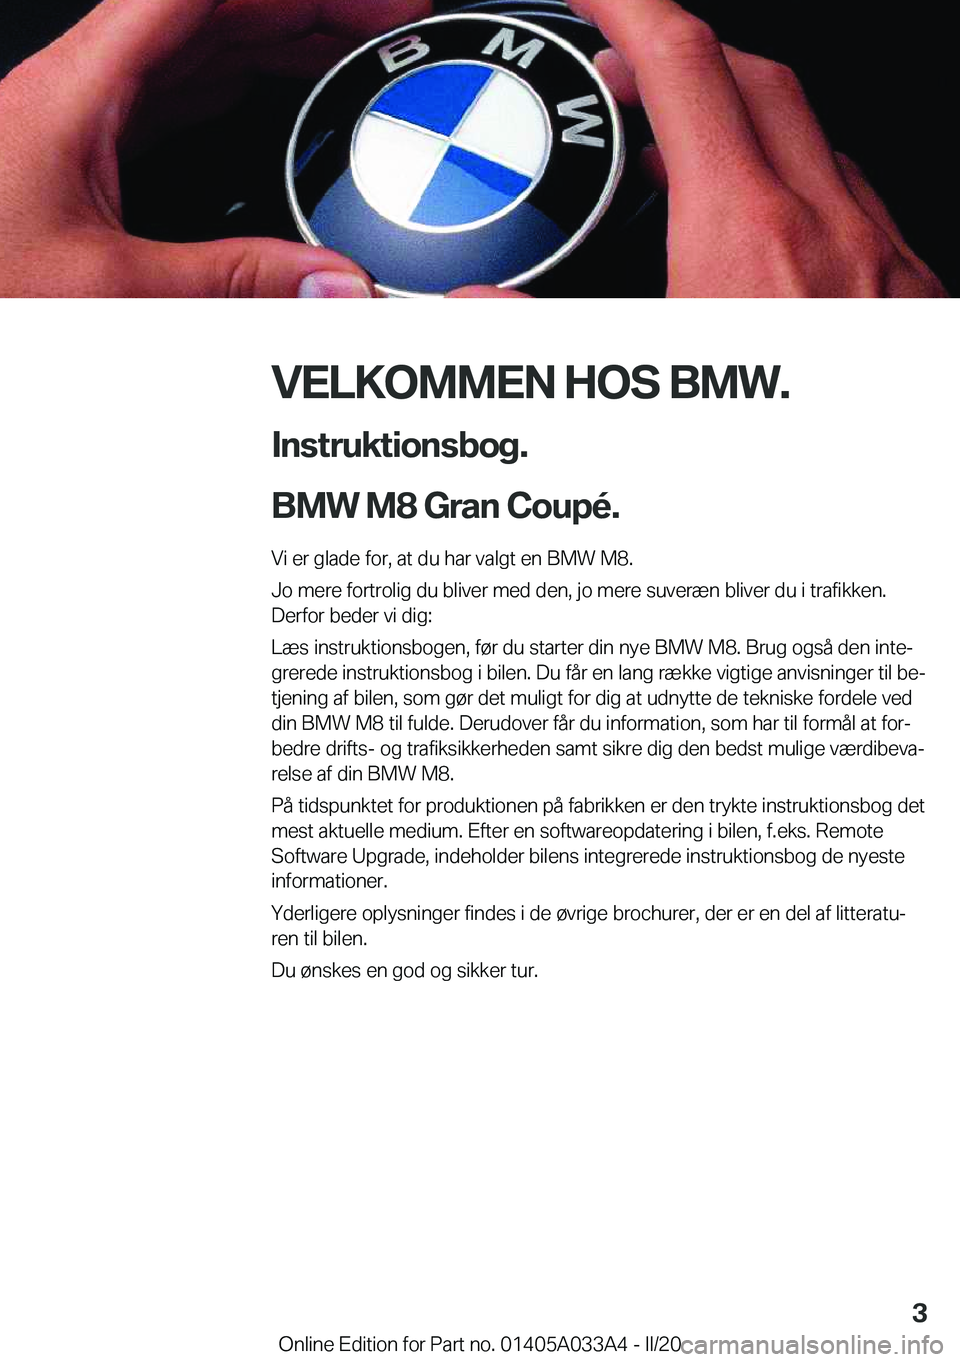 BMW M8 GRAN COUPE 2020  InstruktionsbØger (in Danish) �V�E�L�K�O�M�M�E�N��H�O�S��B�M�W�.
�I�n�s�t�r�u�k�t�i�o�n�s�b�o�g�.
�B�M�W��M�8��G�r�a�n��C�o�u�p�